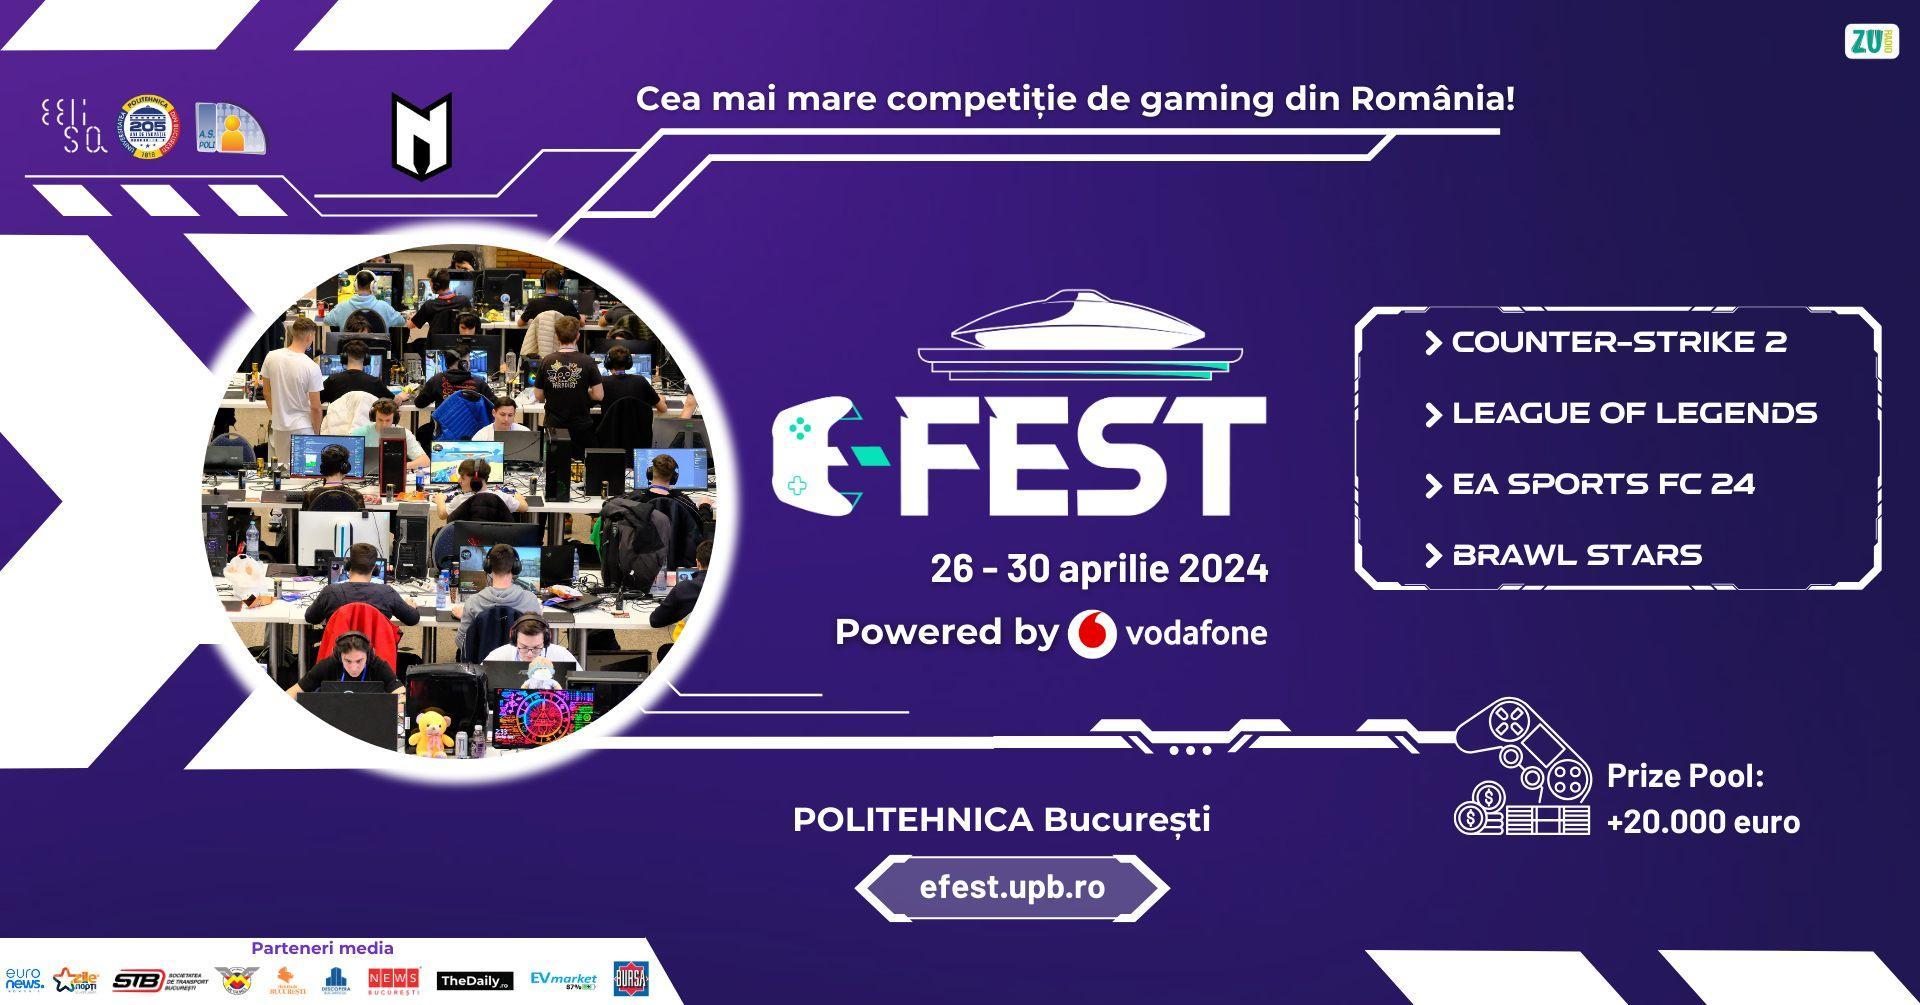 Gaming-ul vine la Politehnica cu premii de 22.000 euro: a început Poli E-FEST, cu Vodafone asigurând cele mai rapide conexiuni